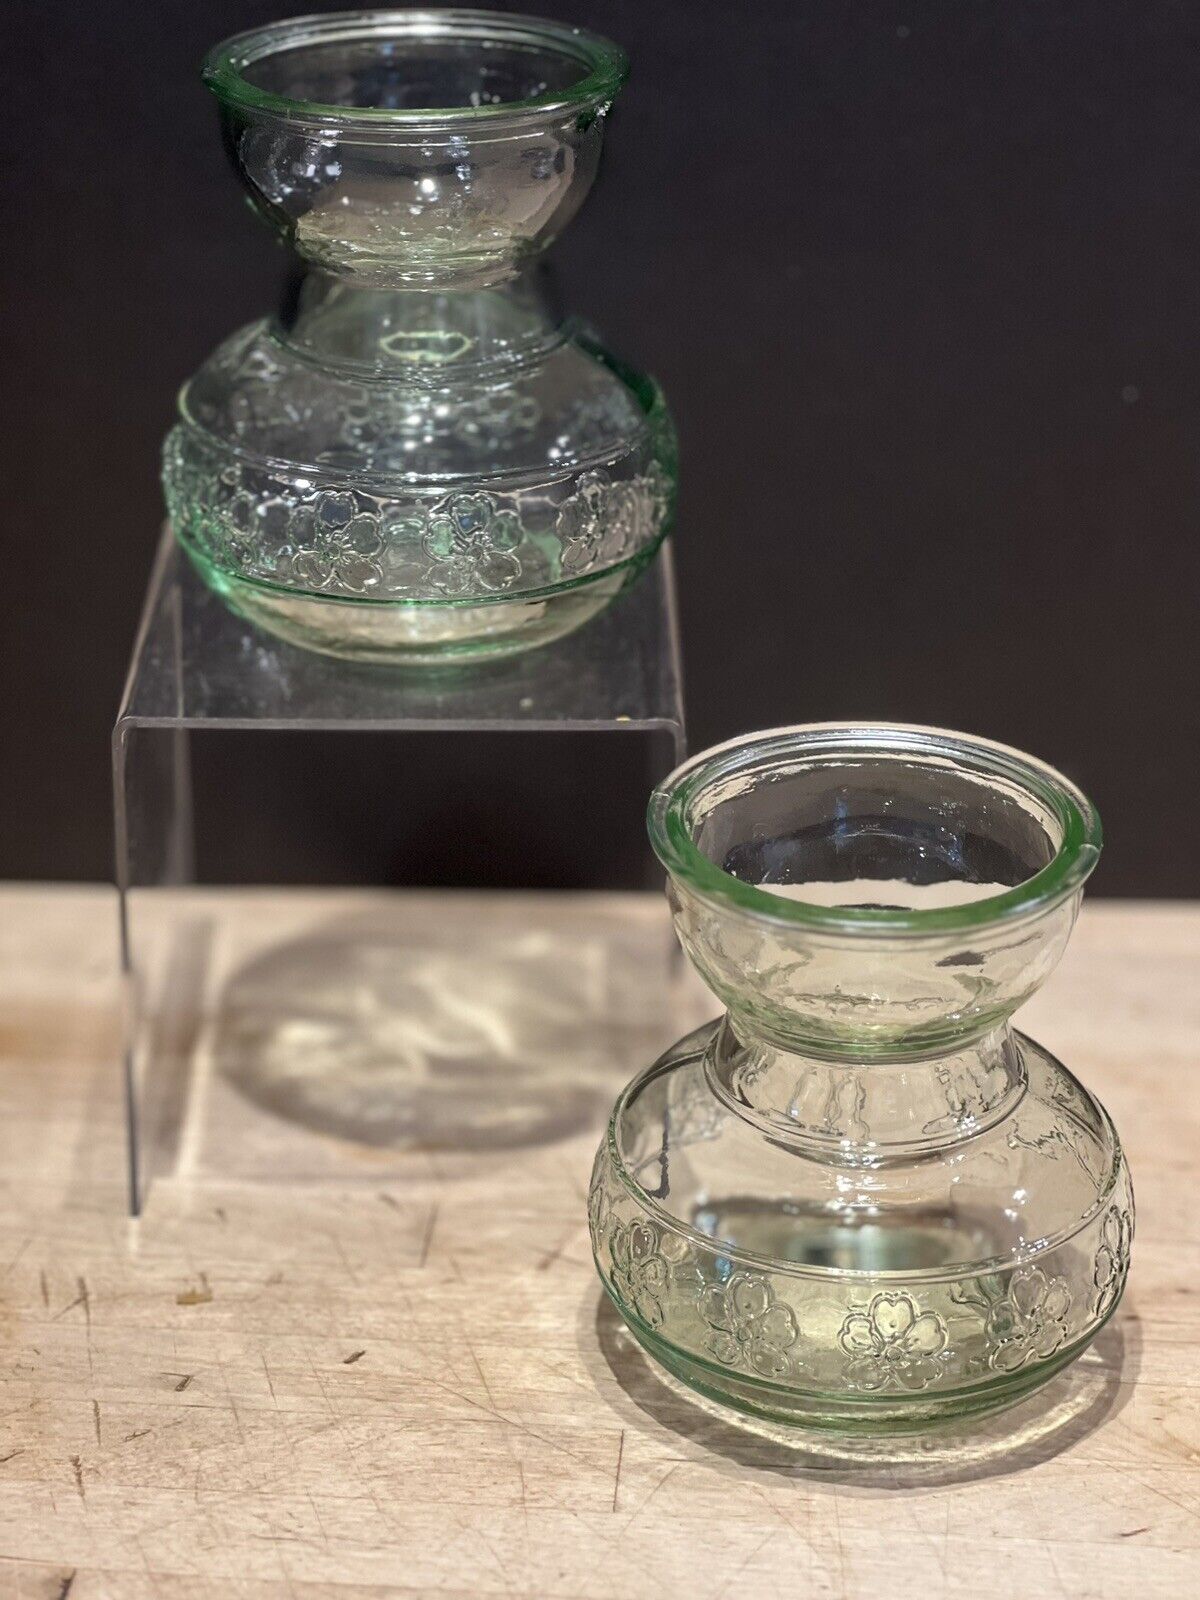 2 Light Green Glass 4” Bulb Forcing Vase Embossed Floral Design